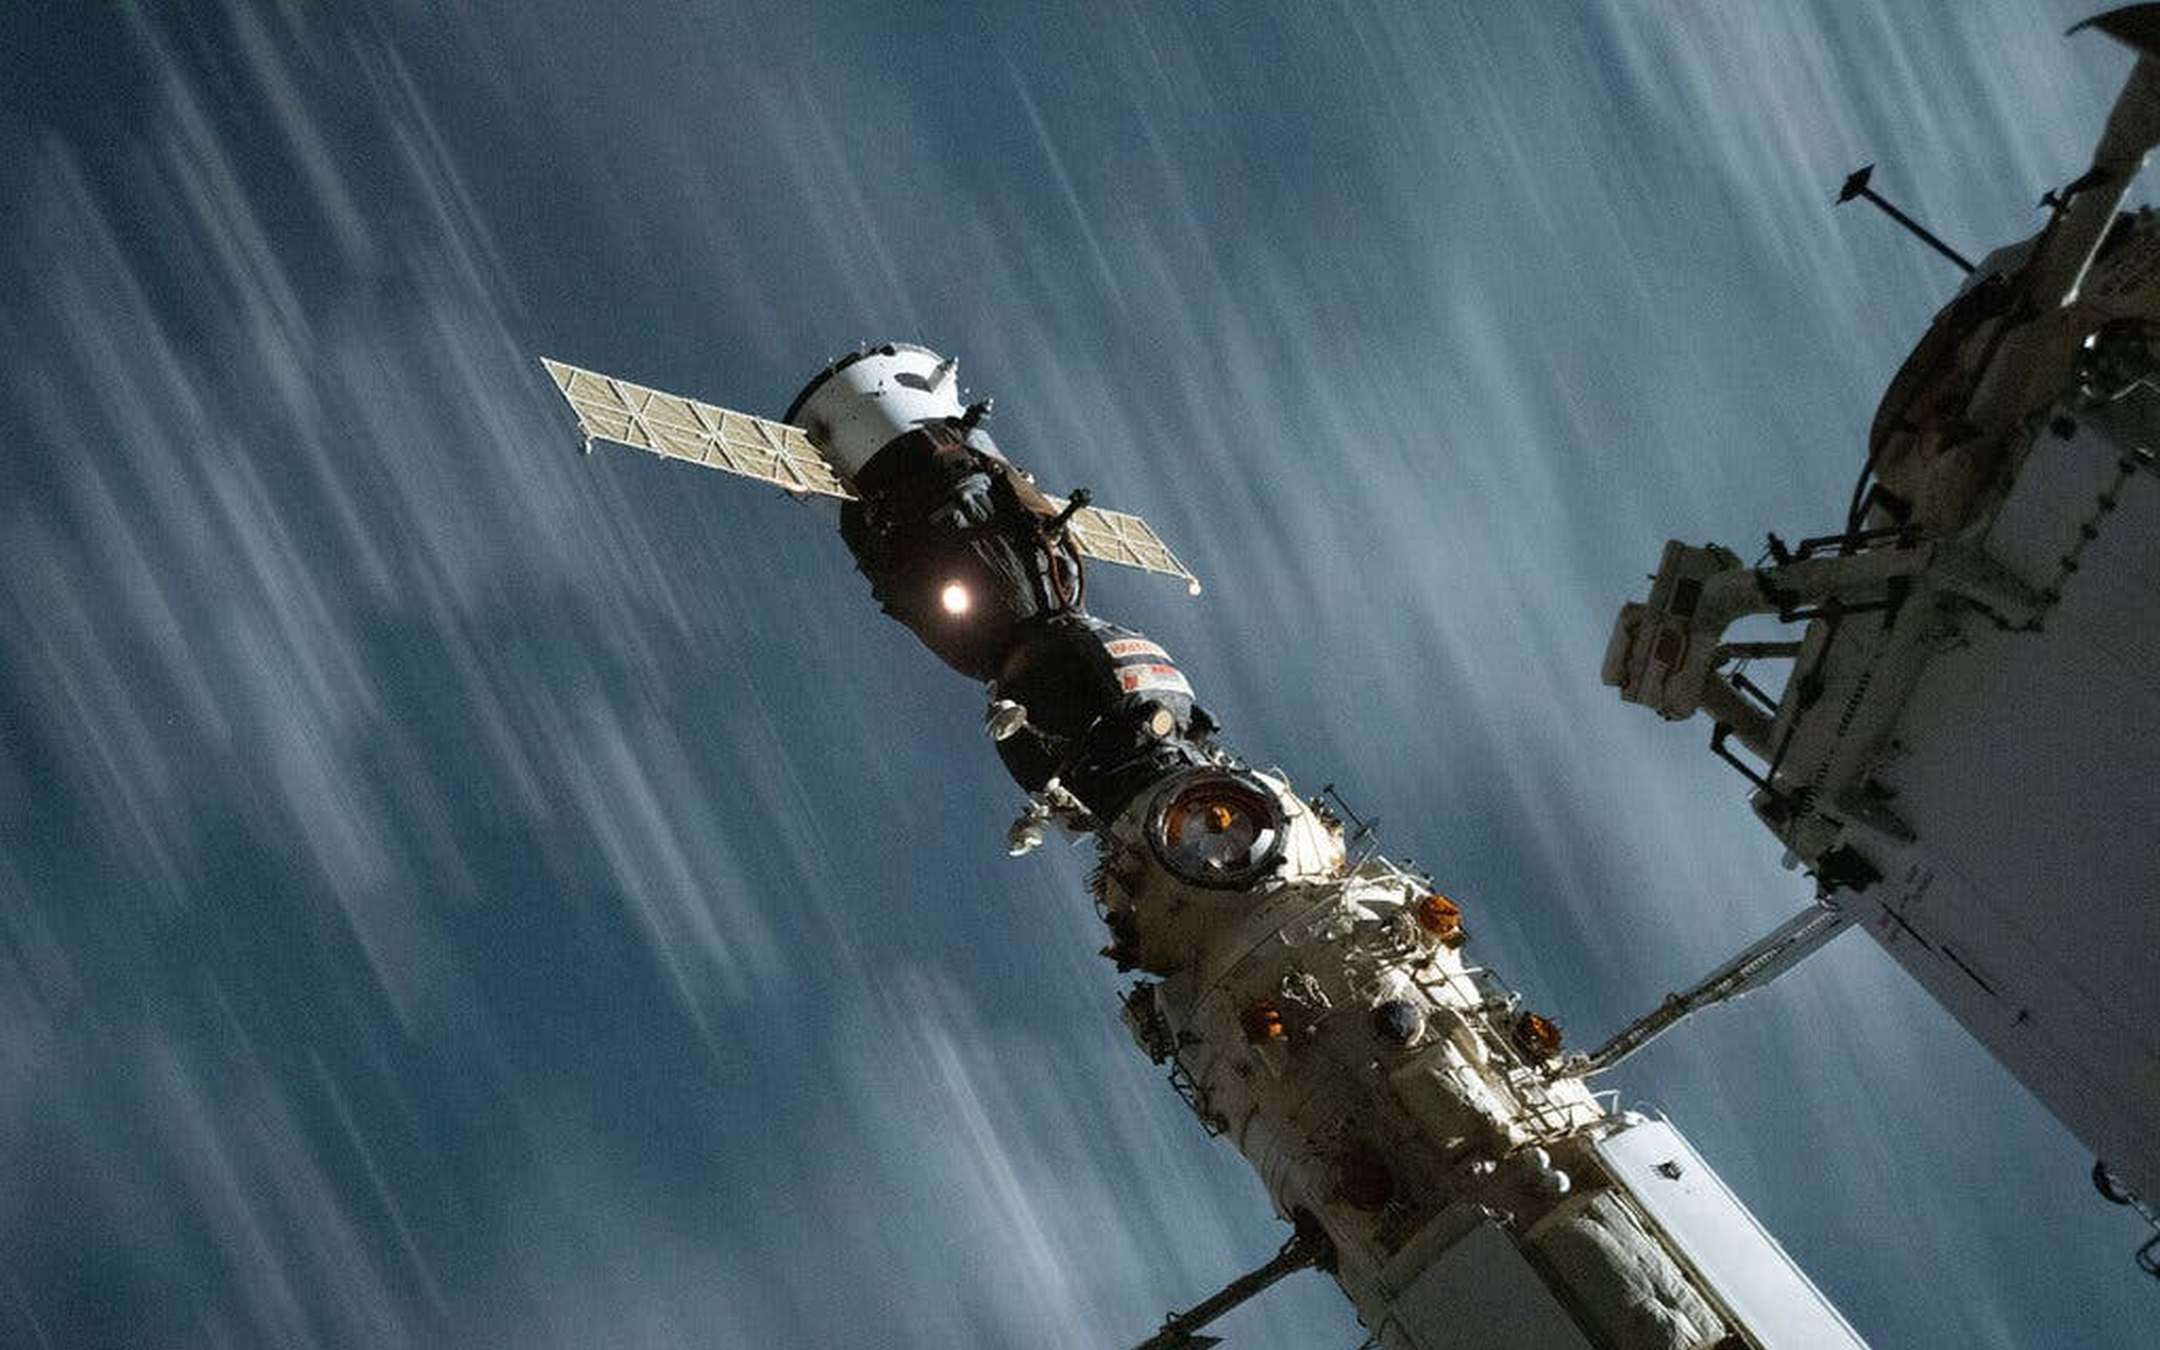 ISS fuori orbita per colpa della Soyuz MS-18